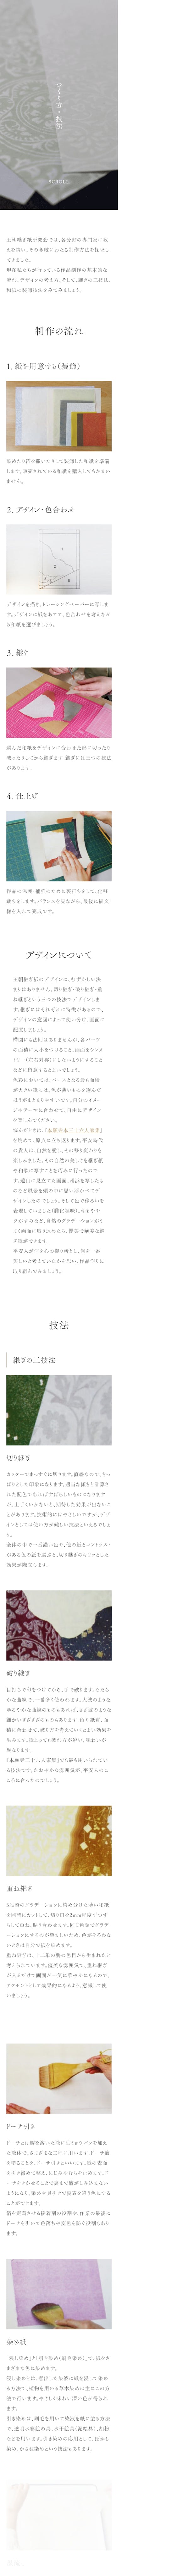 「王朝継ぎ紙研究会」Webサイトリニューアル-8